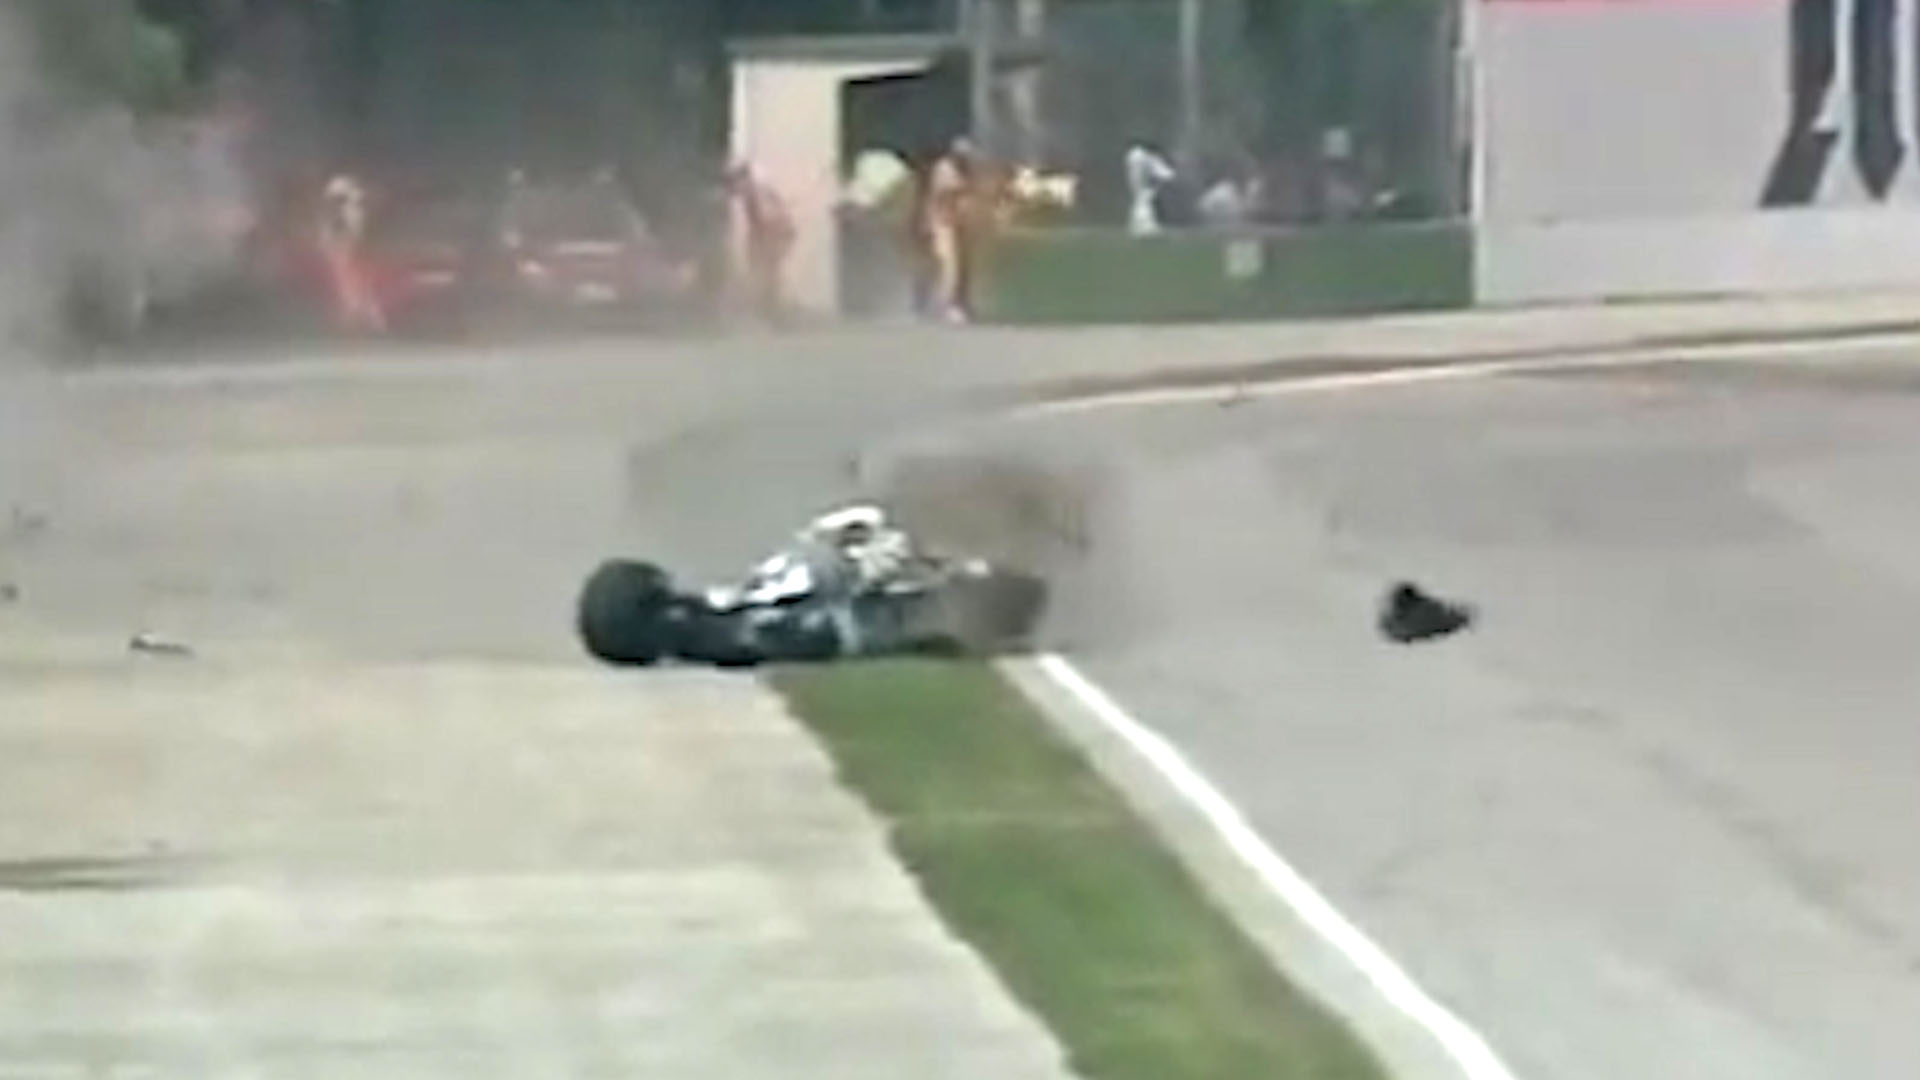 Noté una sensación extraña, como si su alma abandonara”: así fueron las  últimas horas de Ayrton Senna, ICON